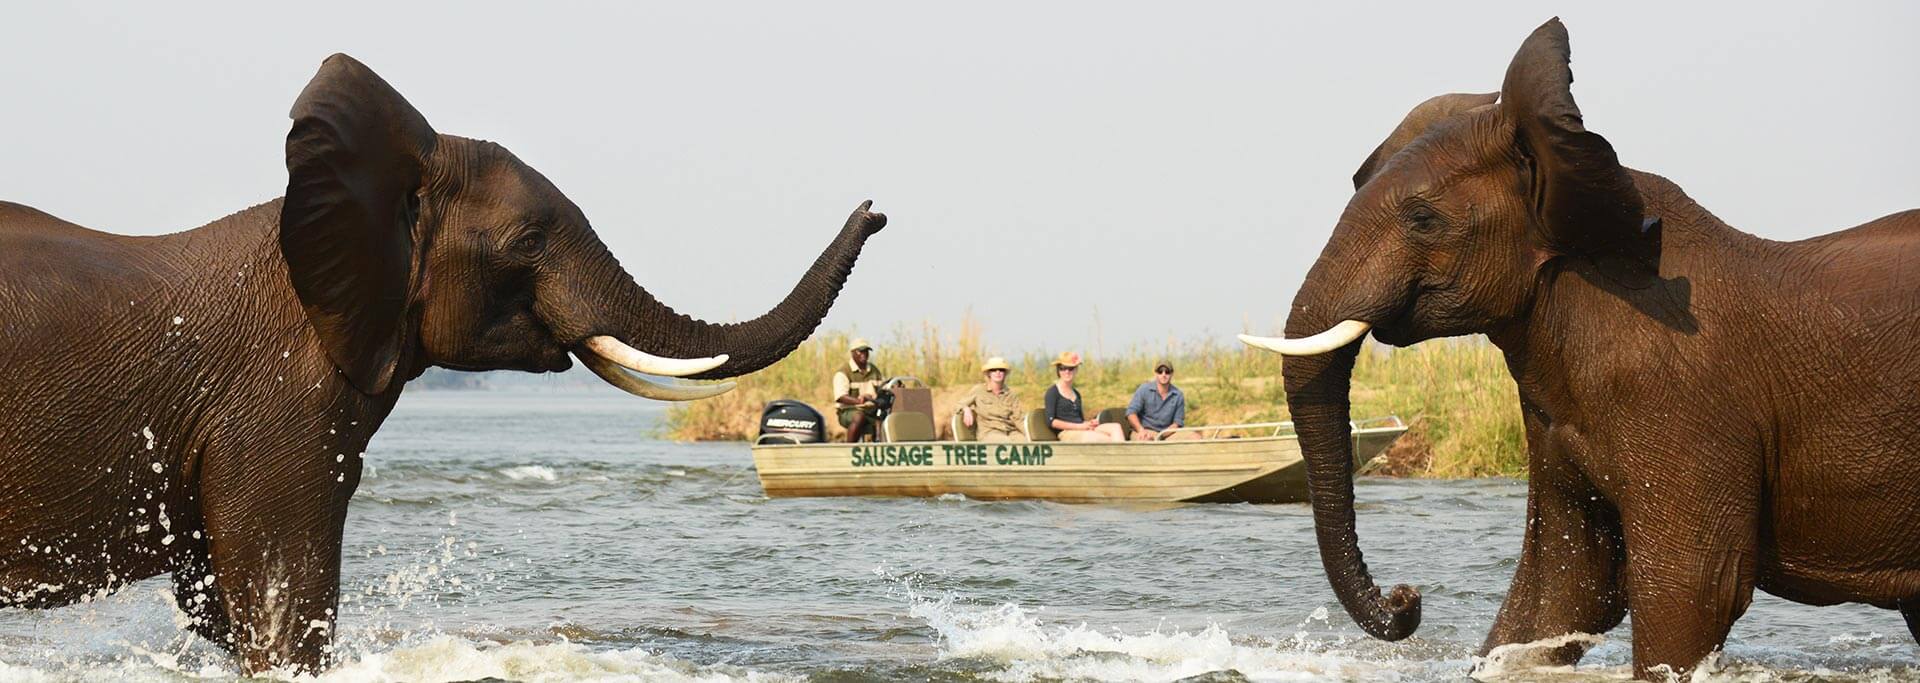 Two elephants fighting in Zambezi River